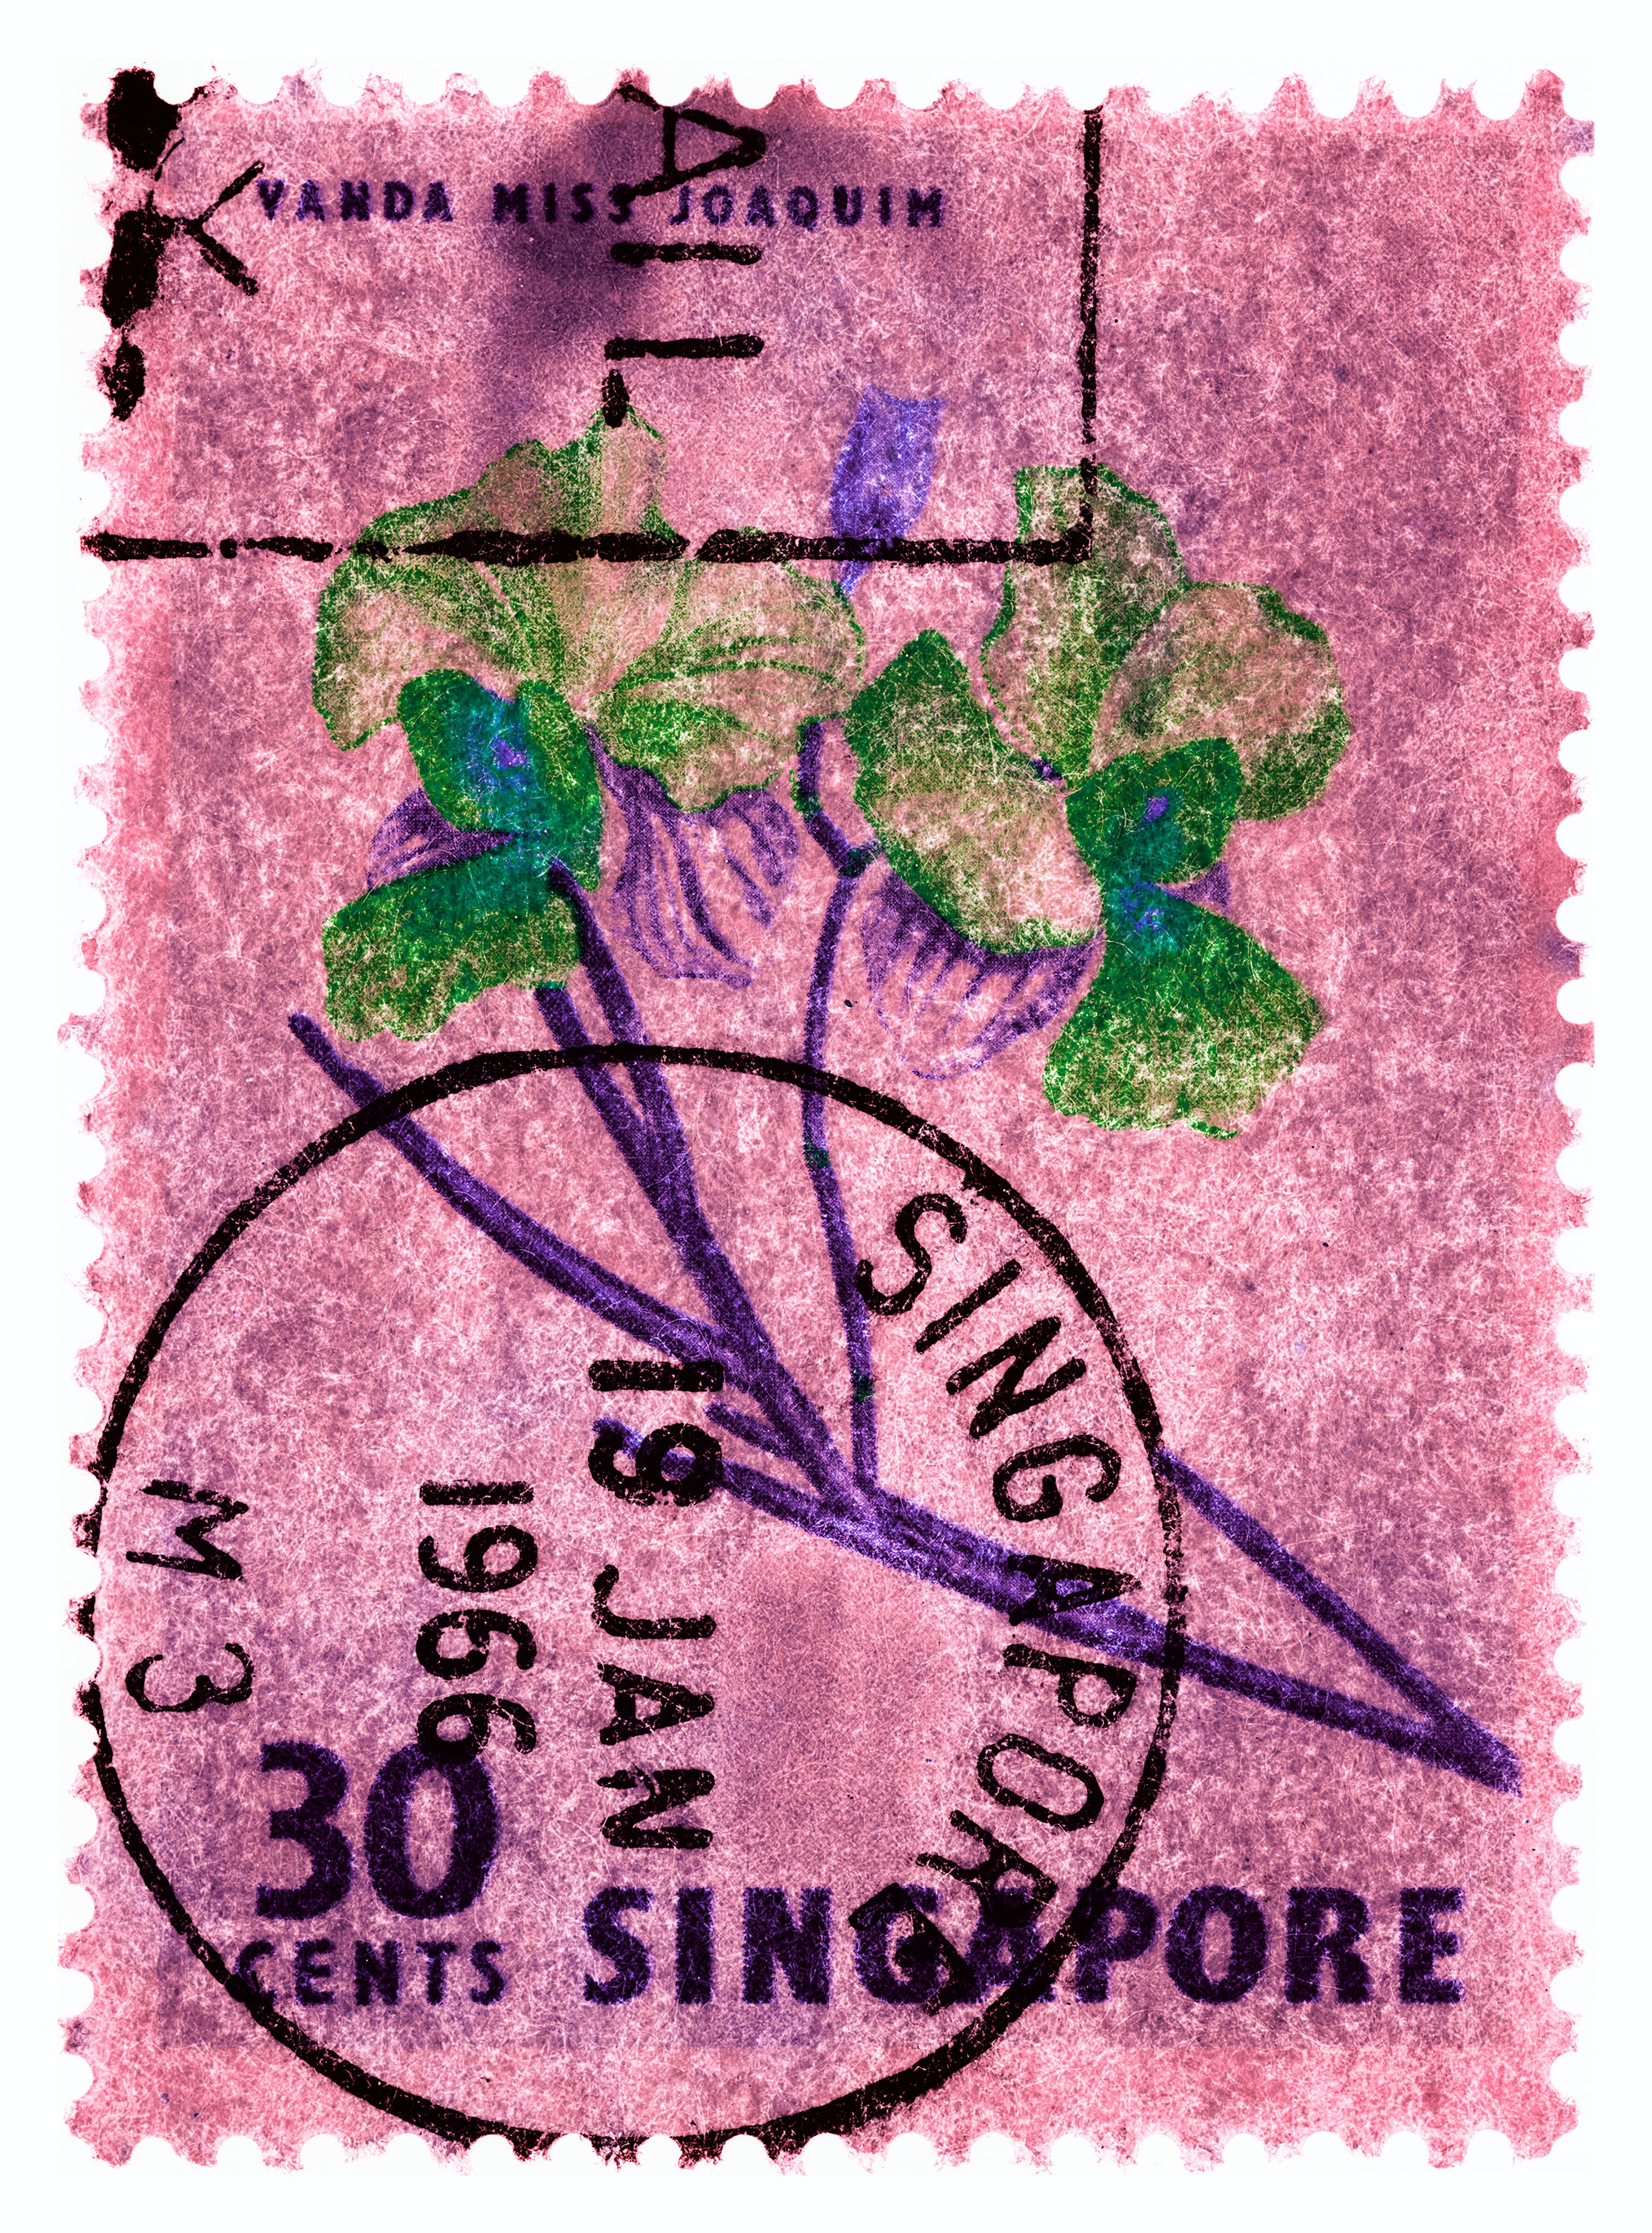 30 Cents Singapur-Orchidee, aus der Heidler & Heeps Briefmarkensammlung.
Die historischen Briefmarken der Briefmarkensammlung Heidler & Heeps, Serie Singapur 